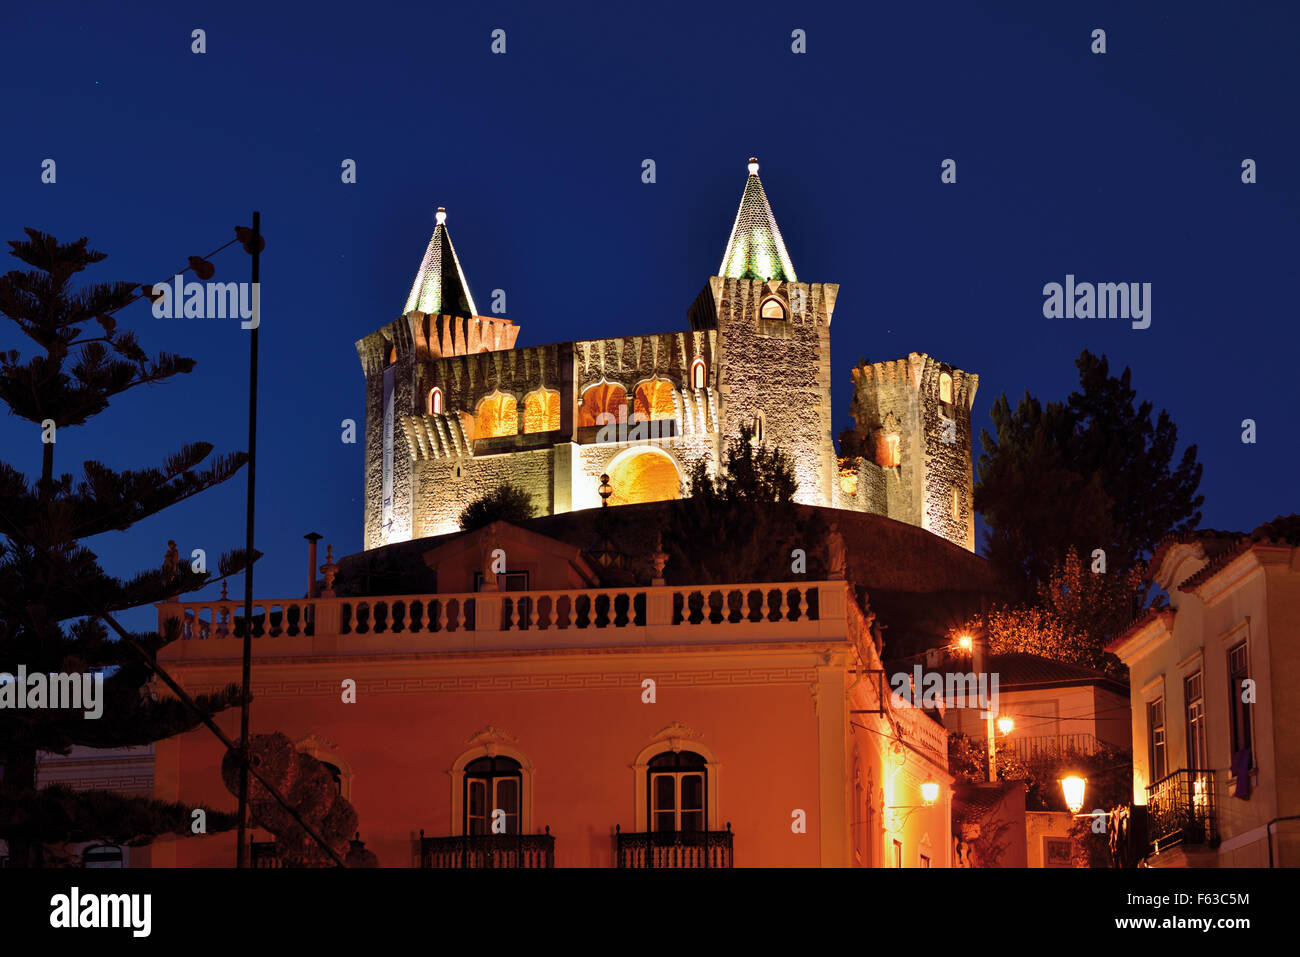 Portugal: Nächtlich beleuchteten mittelalterlichen Burg von Porto de Mós Stockfoto